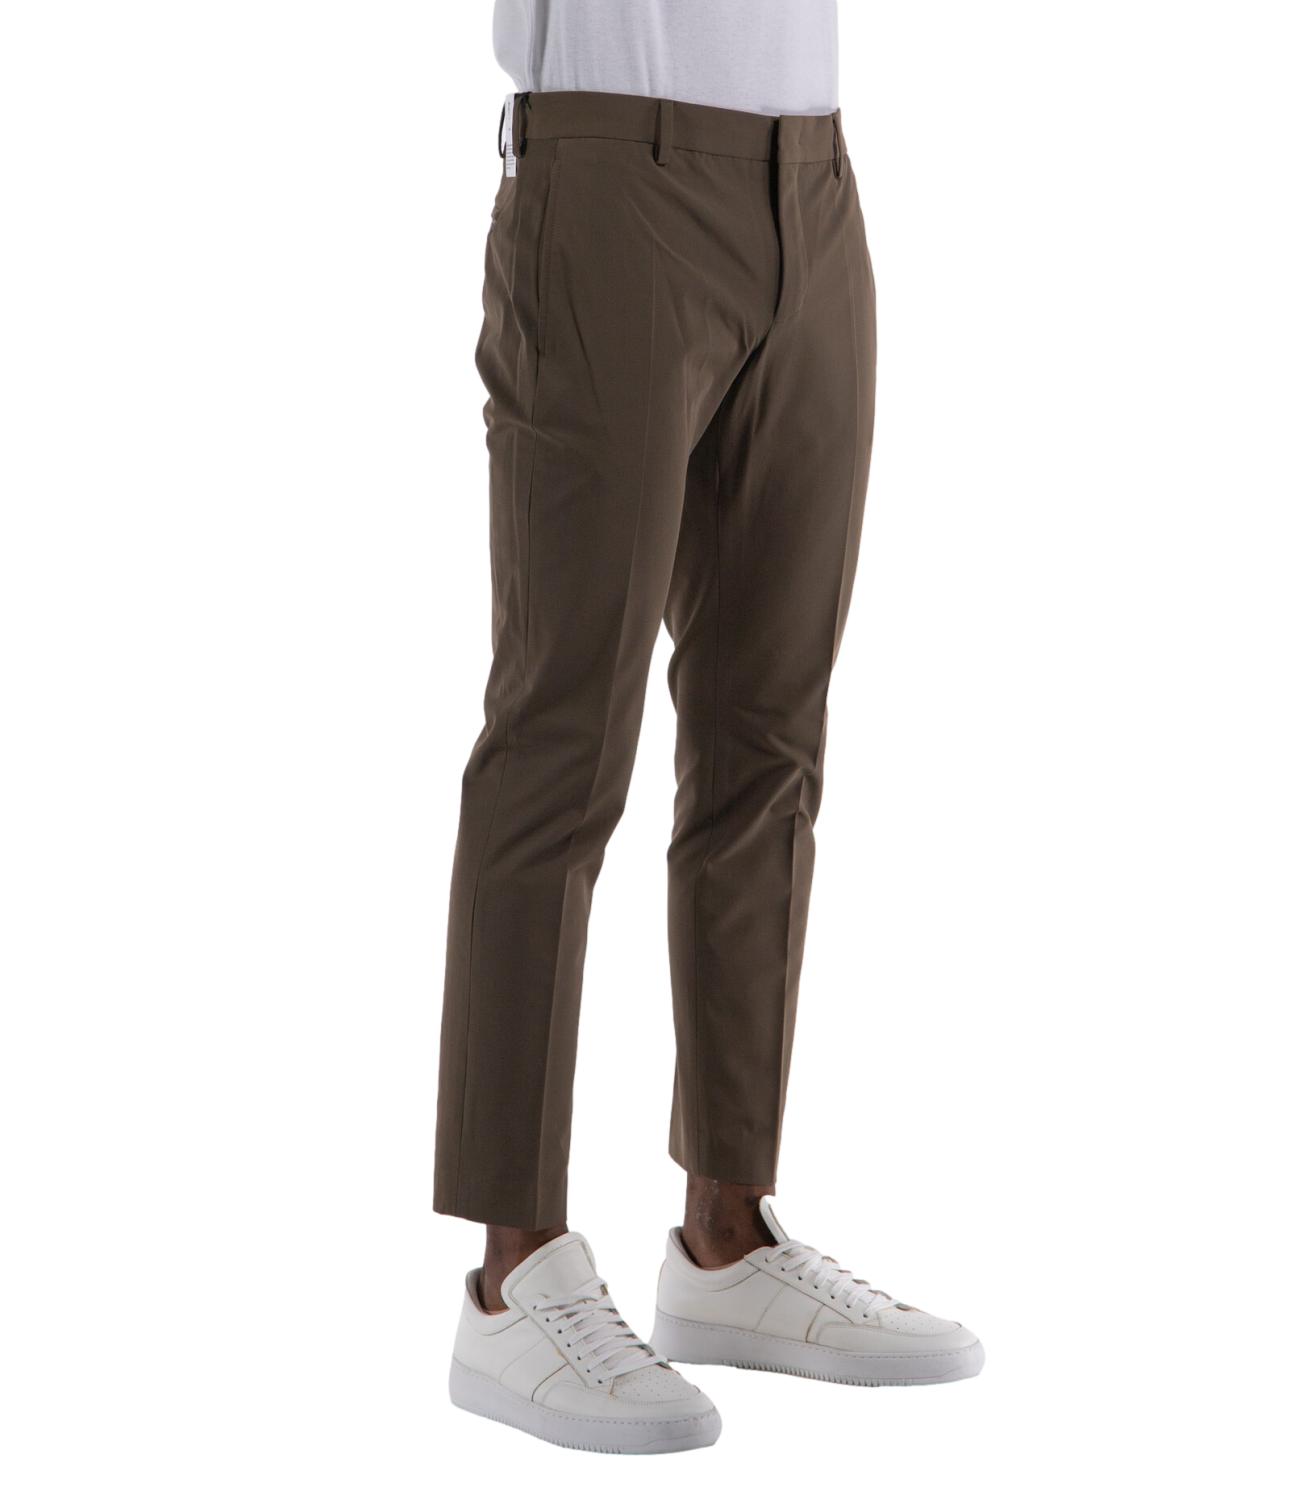 PT Torino pantalone uomo color marrone scuro